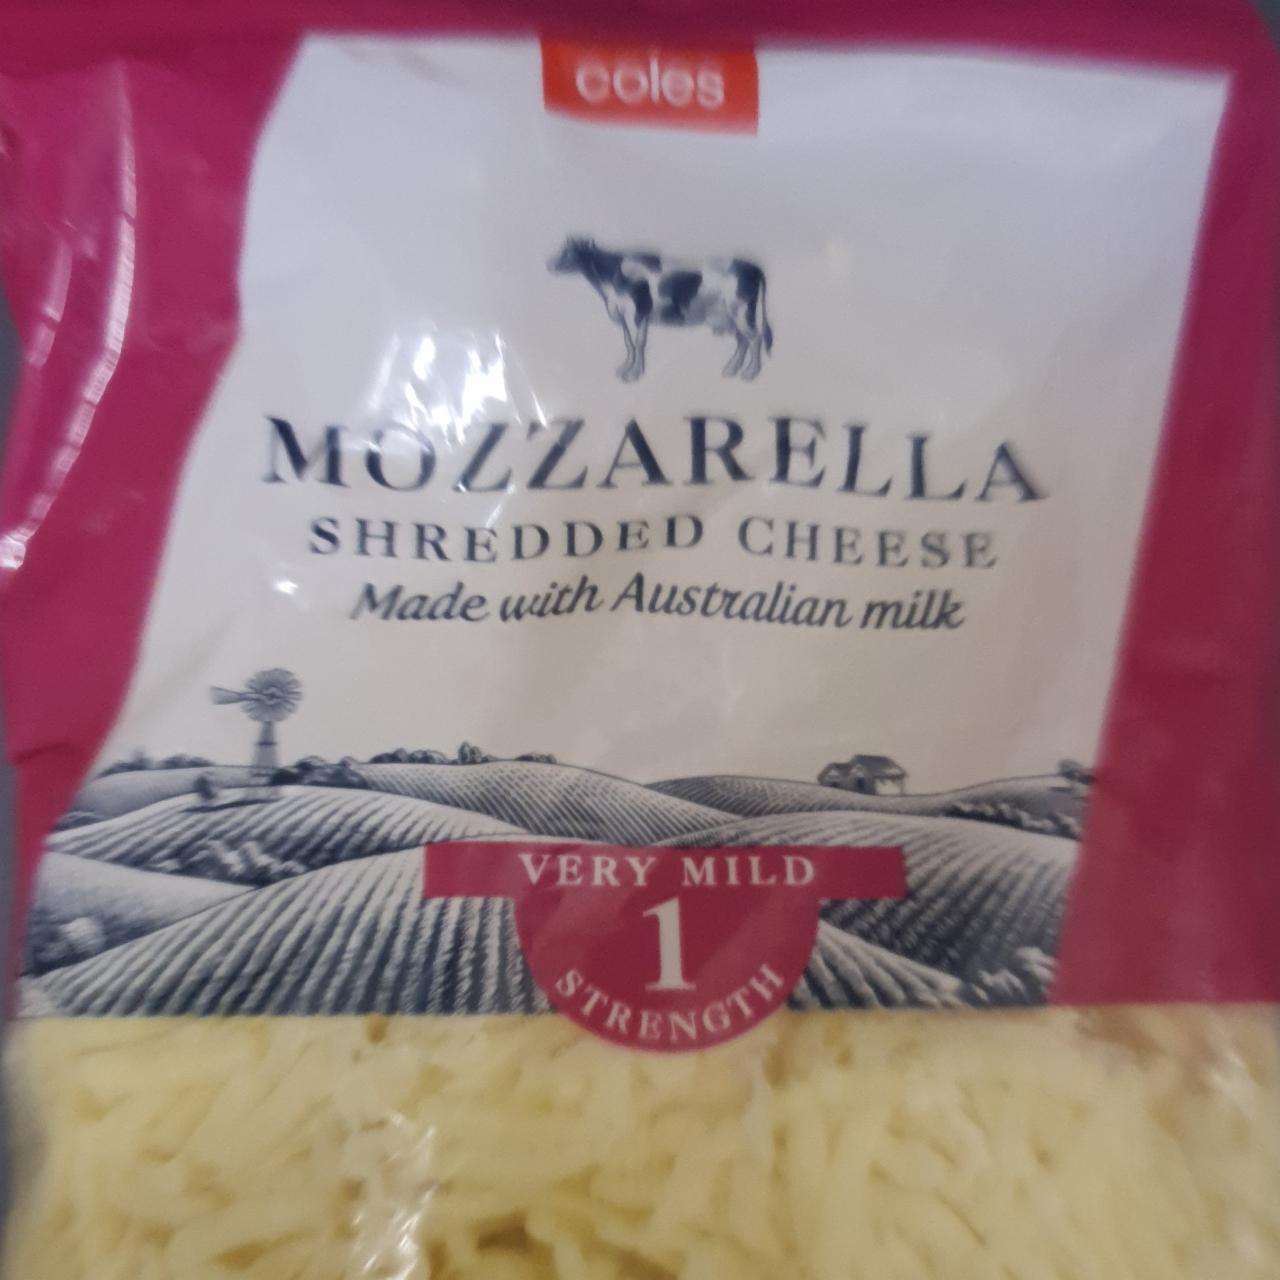 Fotografie - Mozzarella shredded cheese Coles